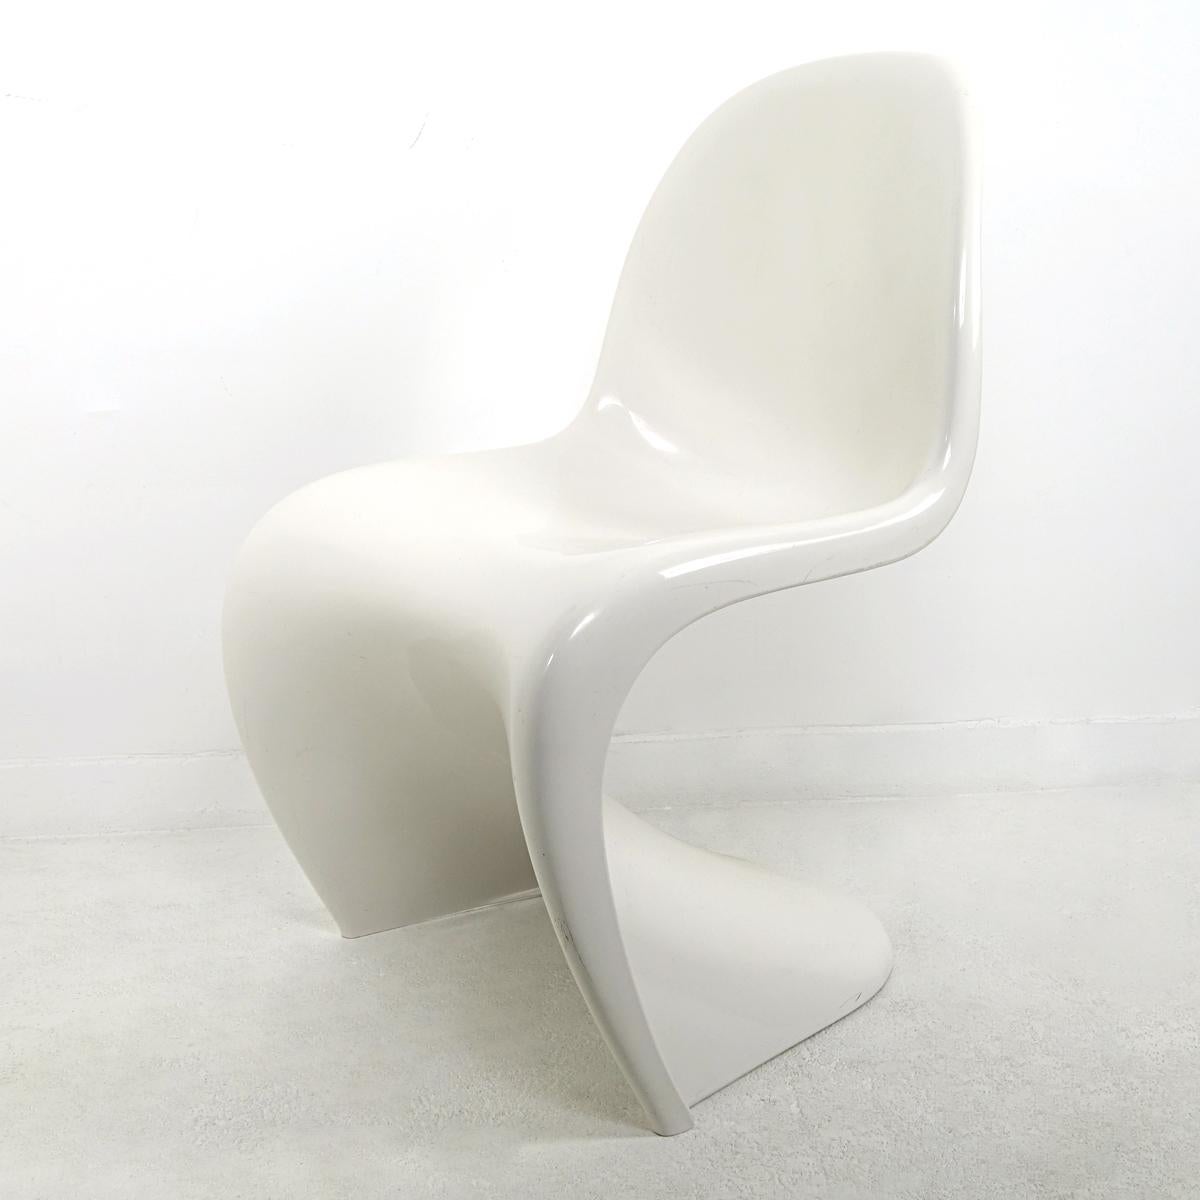 Der S-Chair von Verner Panton ist einer der absoluten Stars der Möbel-Pop-Art.
Dies ist die Originalversion des Herman Miller Fehlbaum Production in dem schönen, glänzenden Thermoplast, der so gut zu dem Design passt.